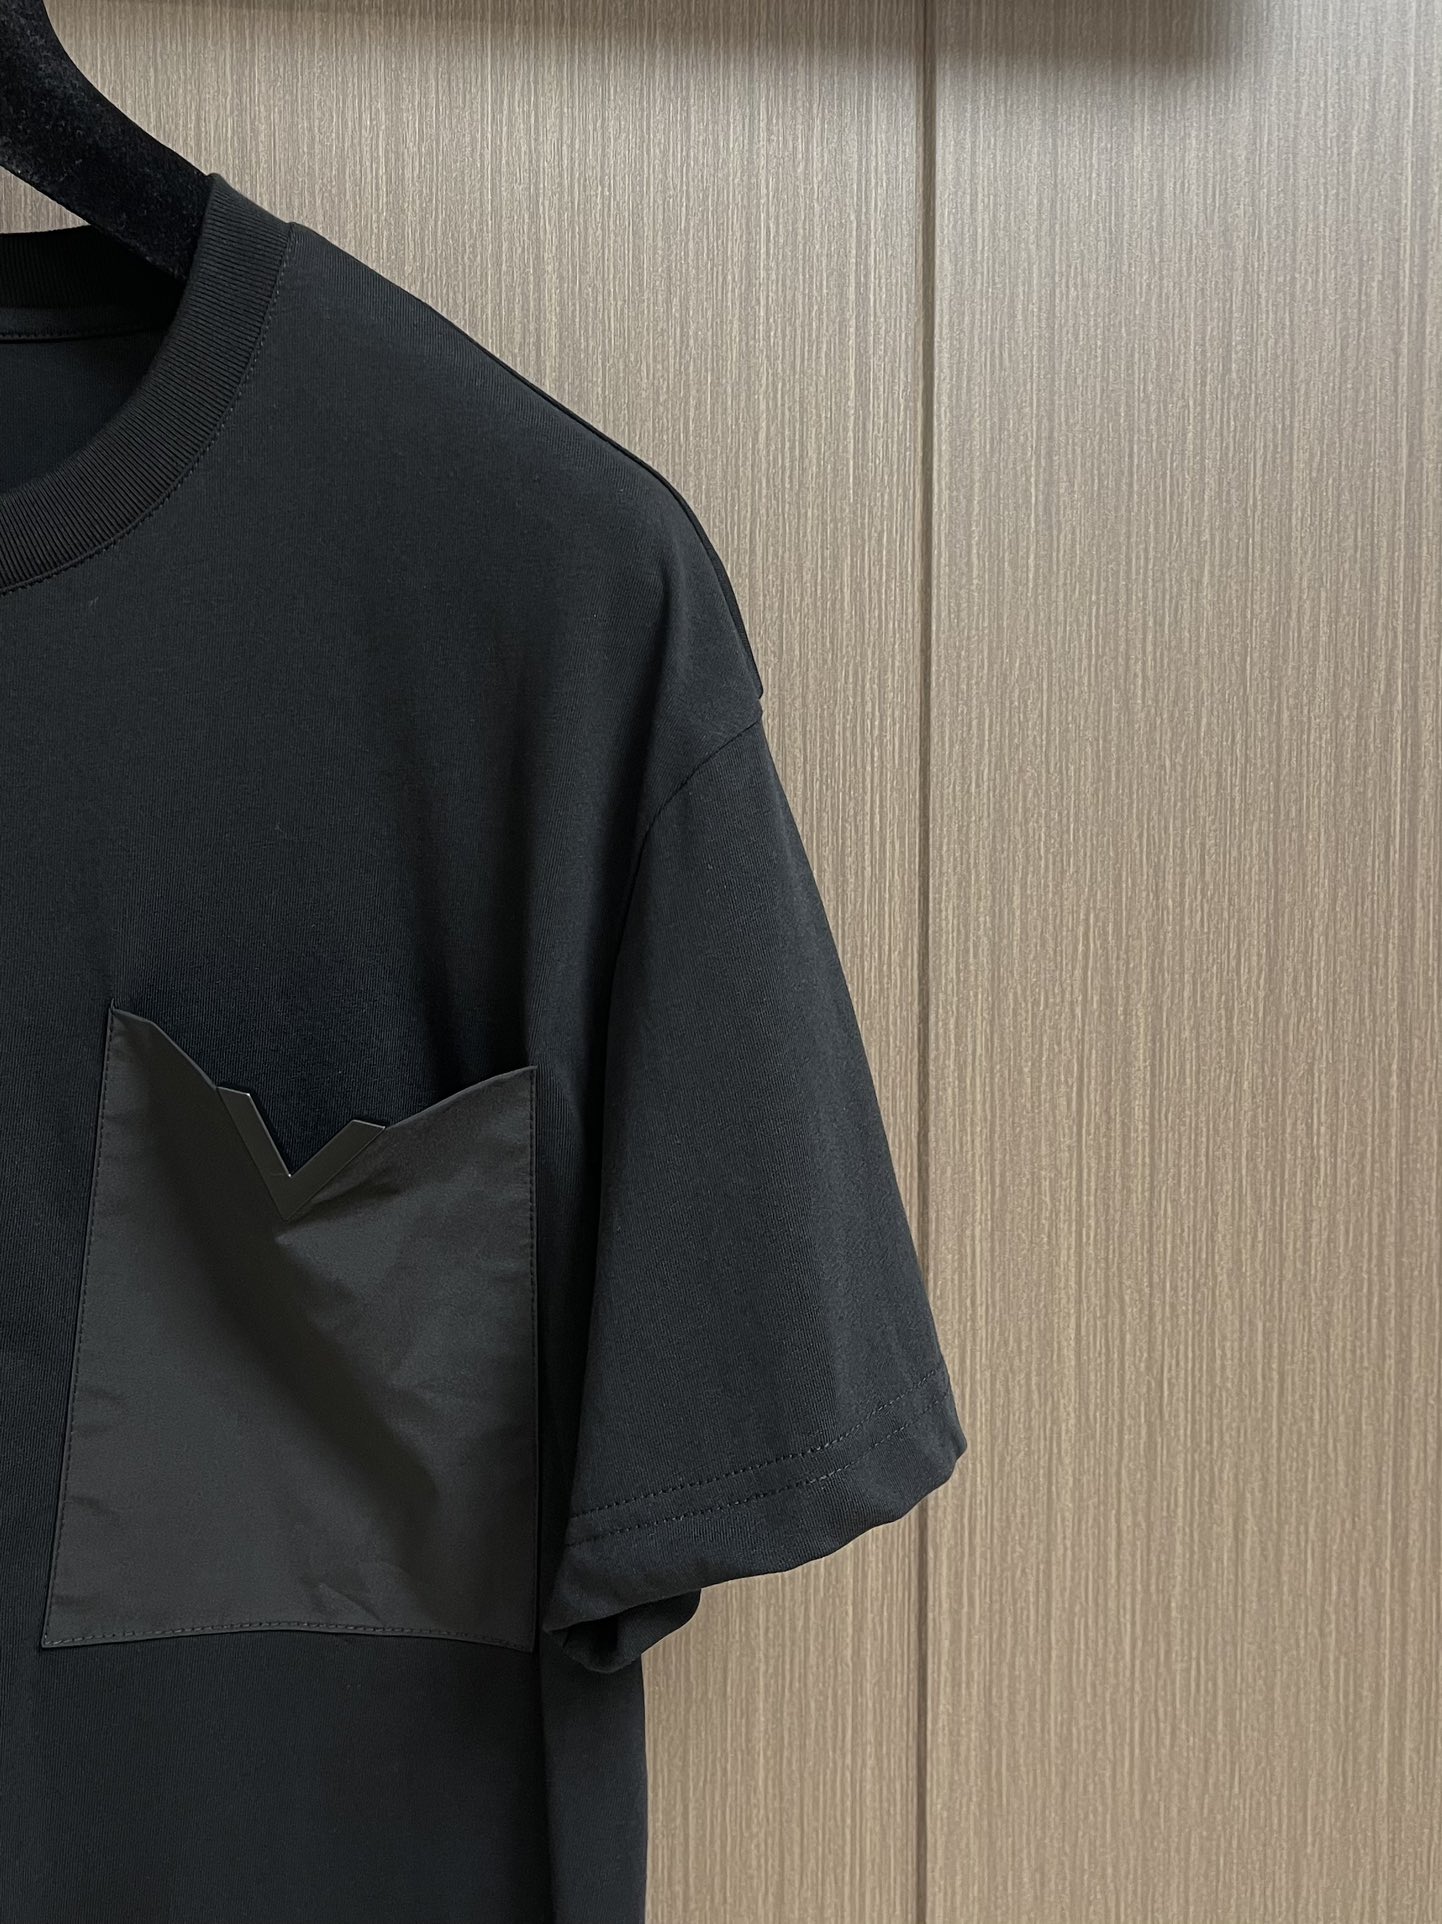 Valentino2024ss新款圆领T恤进口长绒棉舒适透气质地细密柔软螺纹面料整体定制定染先完美的凹凸